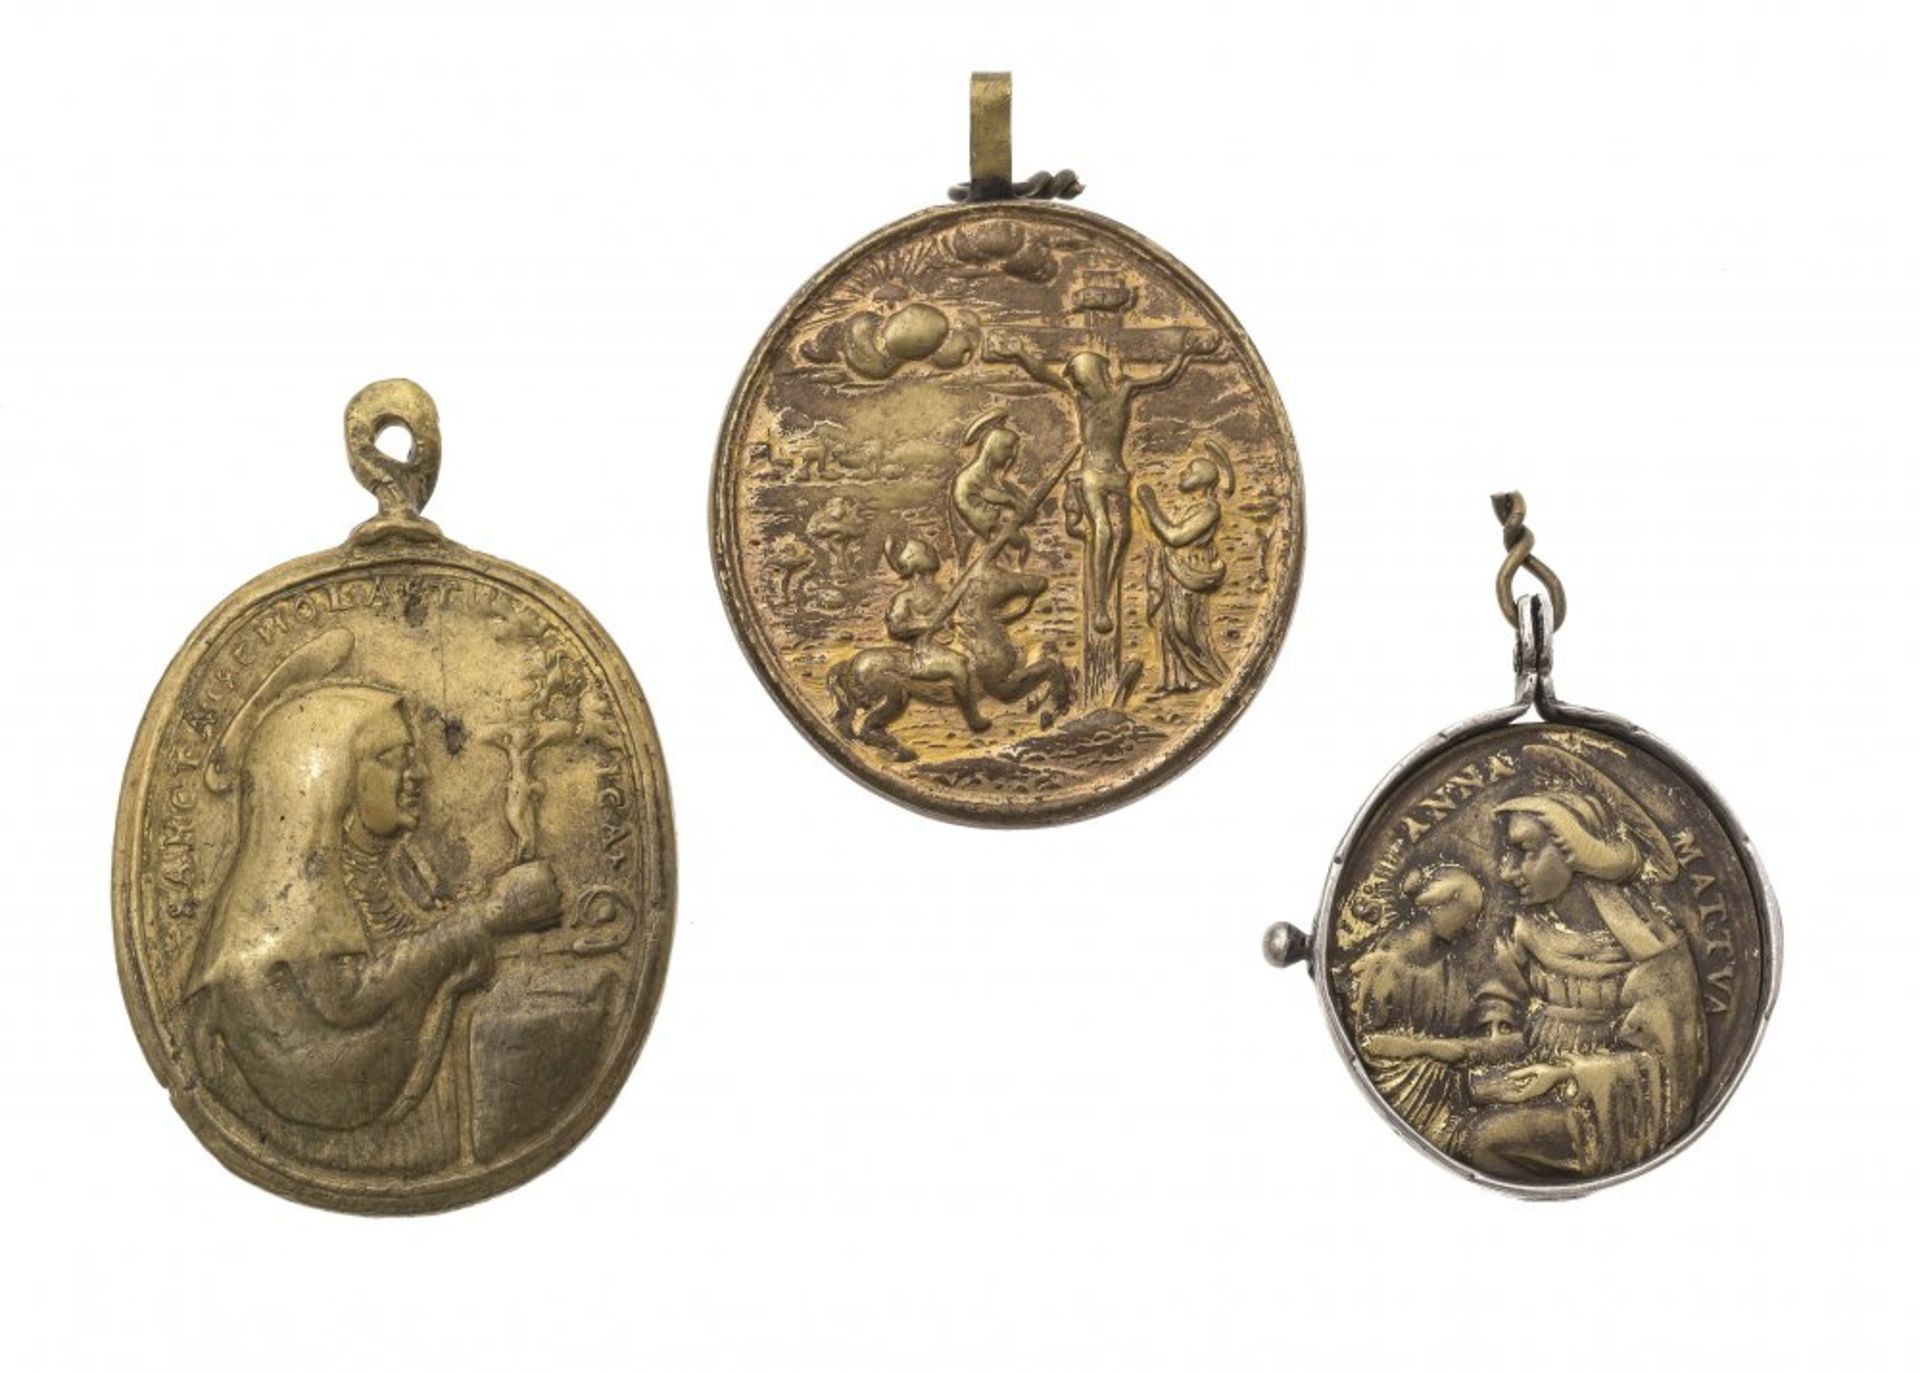 Three pilgrimage medals